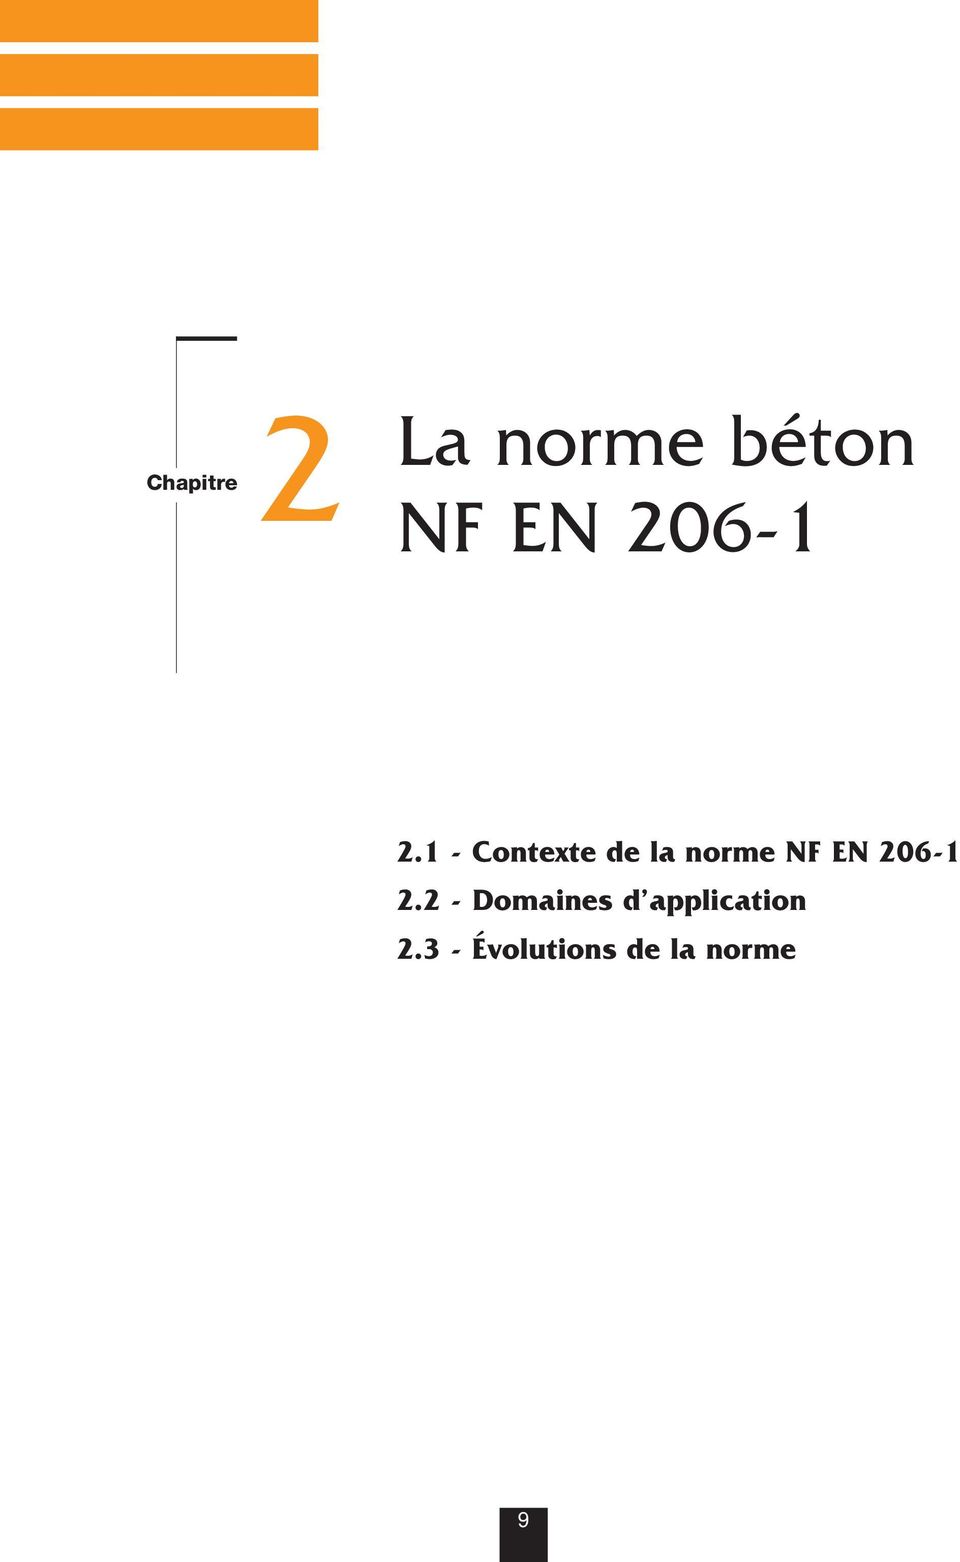 1 - Contexte de la norme NF EN 2